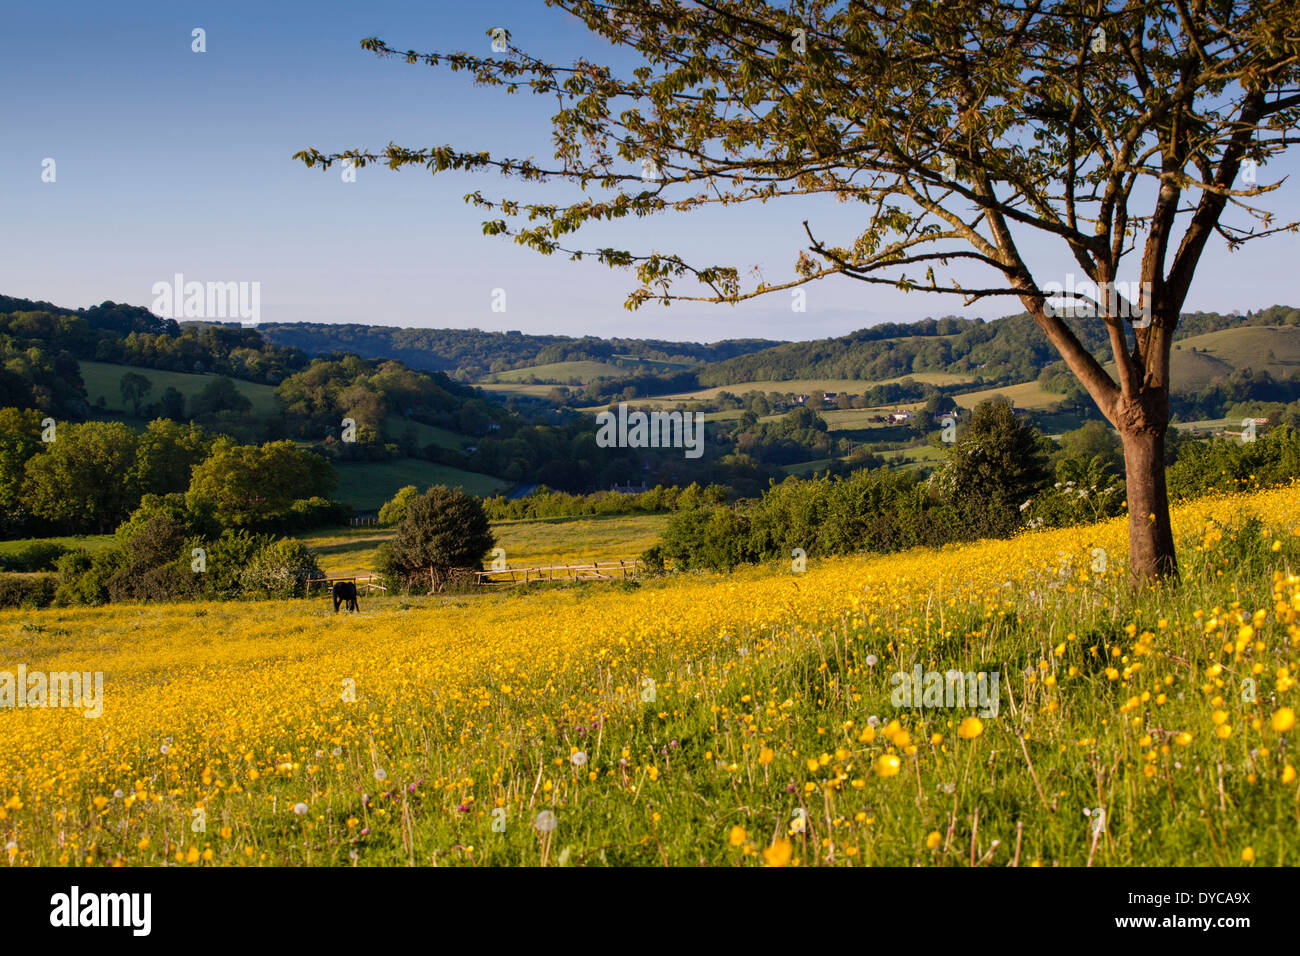 La vallée de Slad, Stroud, Gloucestershire, Royaume-Uni. Emplacement du livre 'Le cidre avec Rosie' par Laurie Lee. Banque D'Images